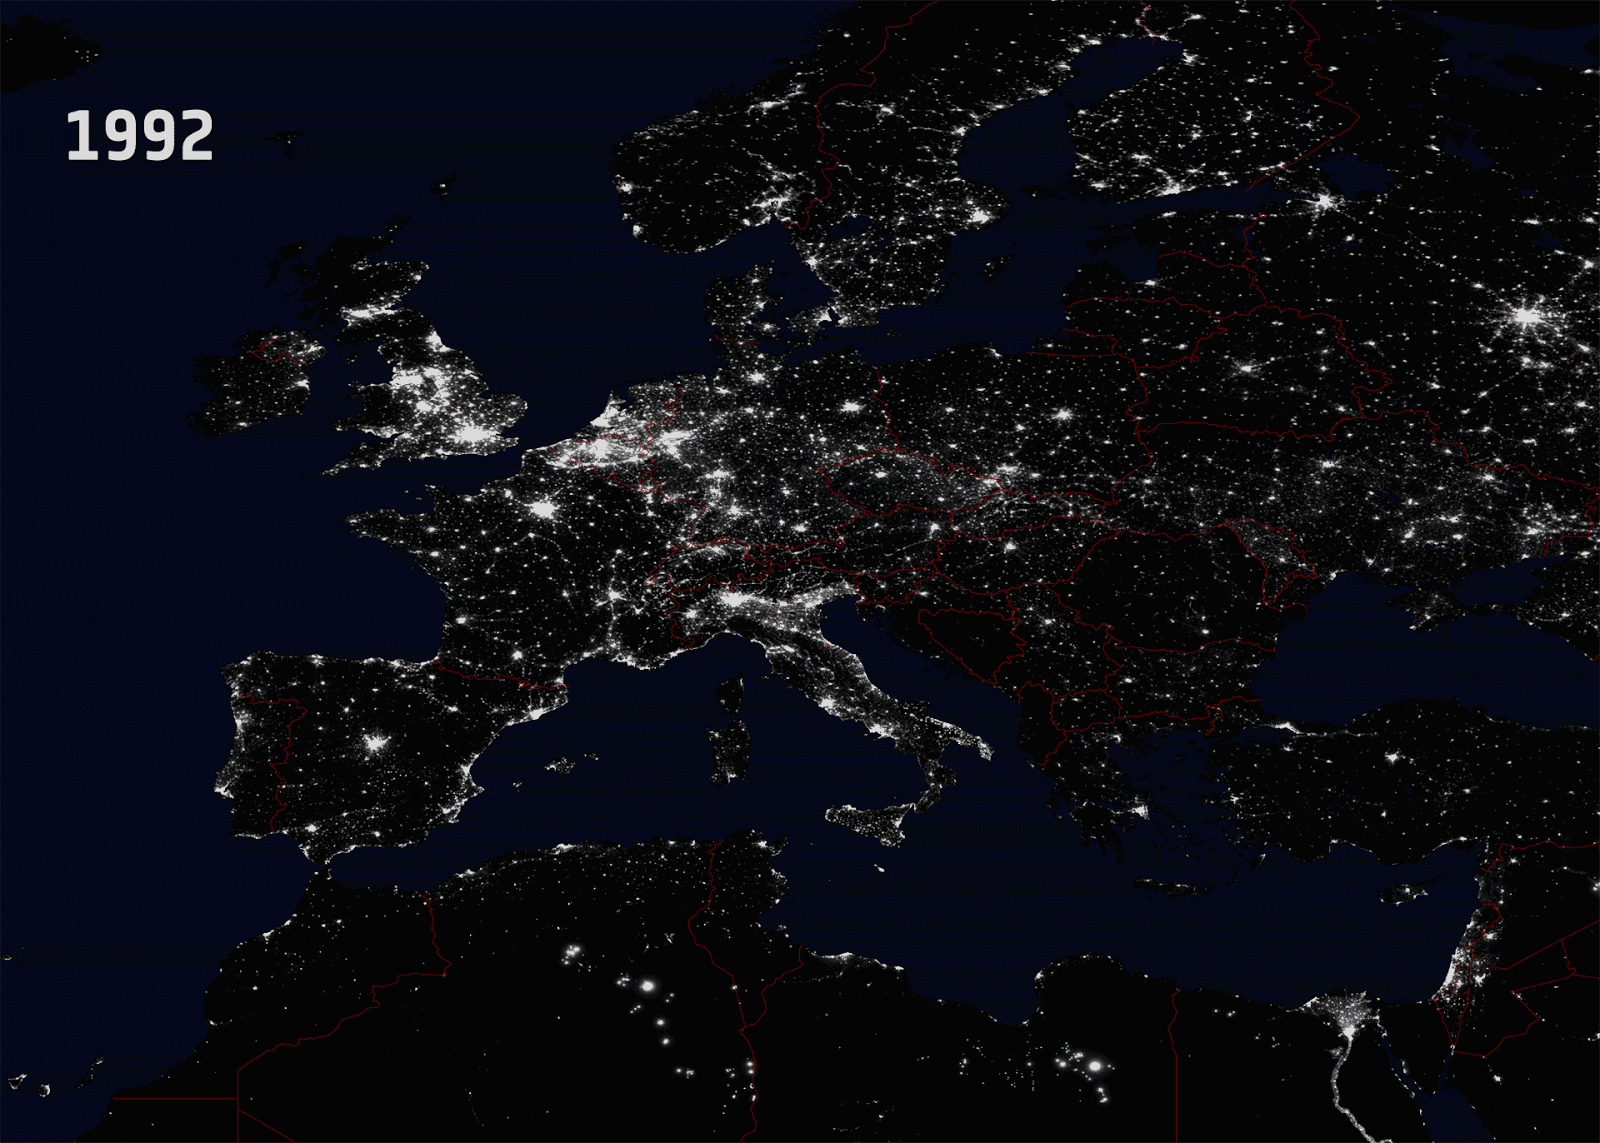 Evolution de la pollution lumineuse en Europe de 1992 à 2010